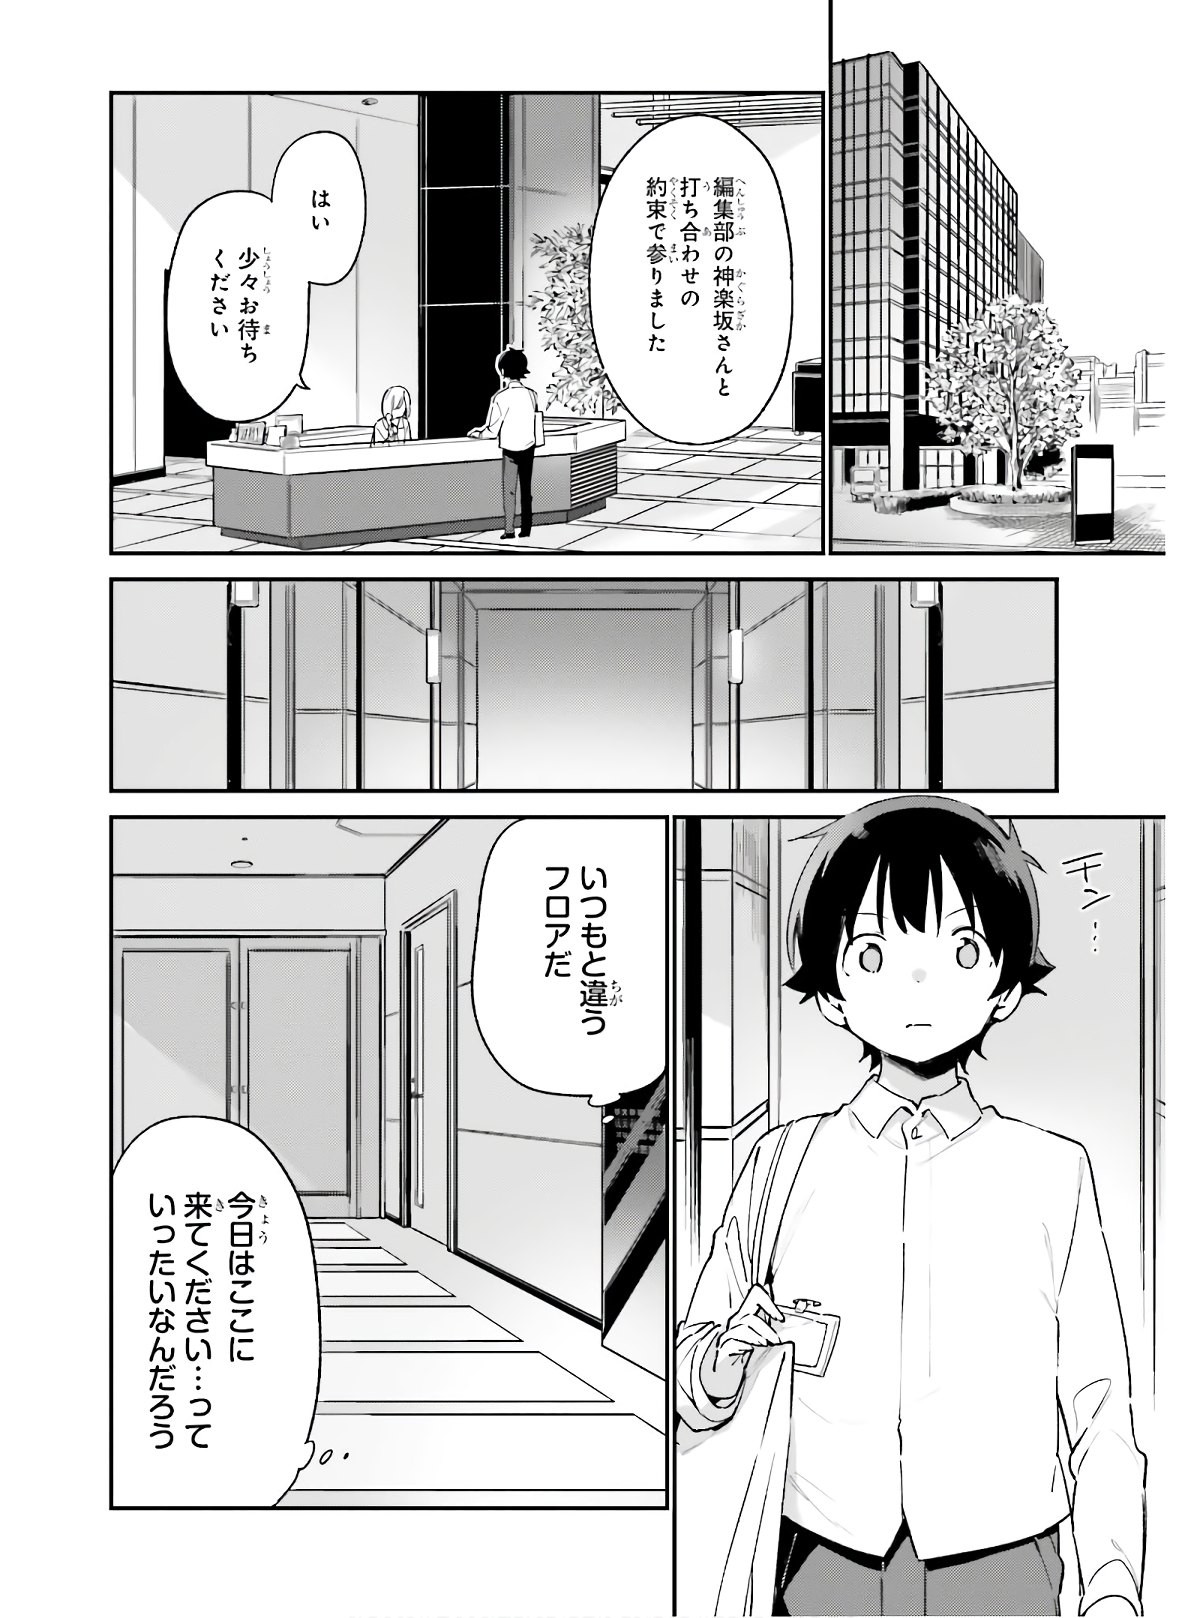 Ero Manga Sensei - Chapter 73 - Page 2